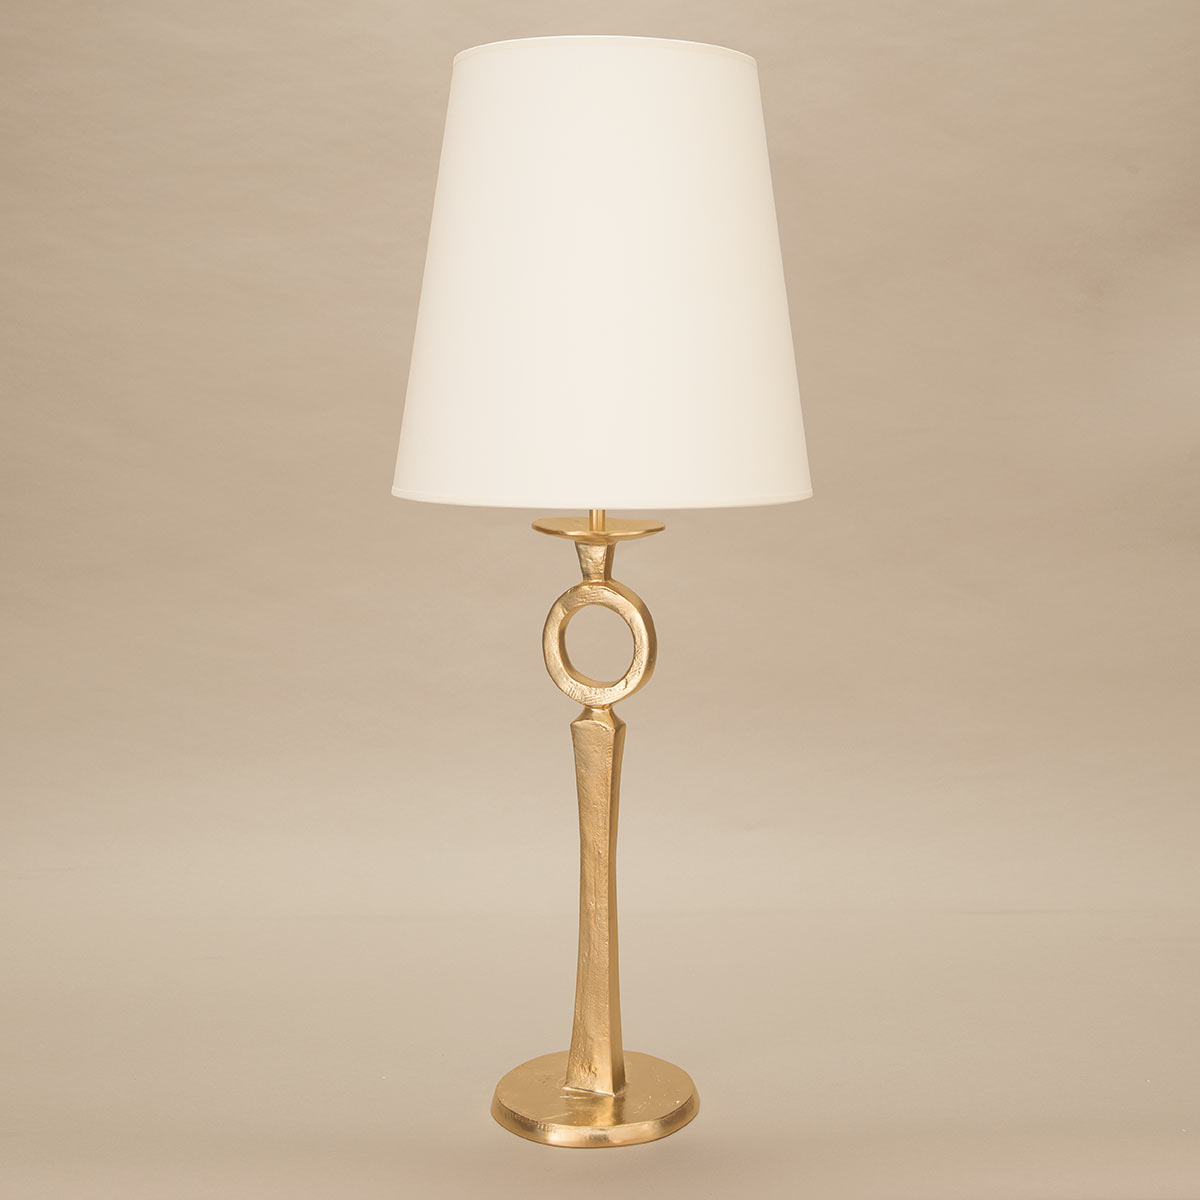 objet-insolite-diego-lampe-bronze-or-Decoris-Interior_Design-Zurich.jpg